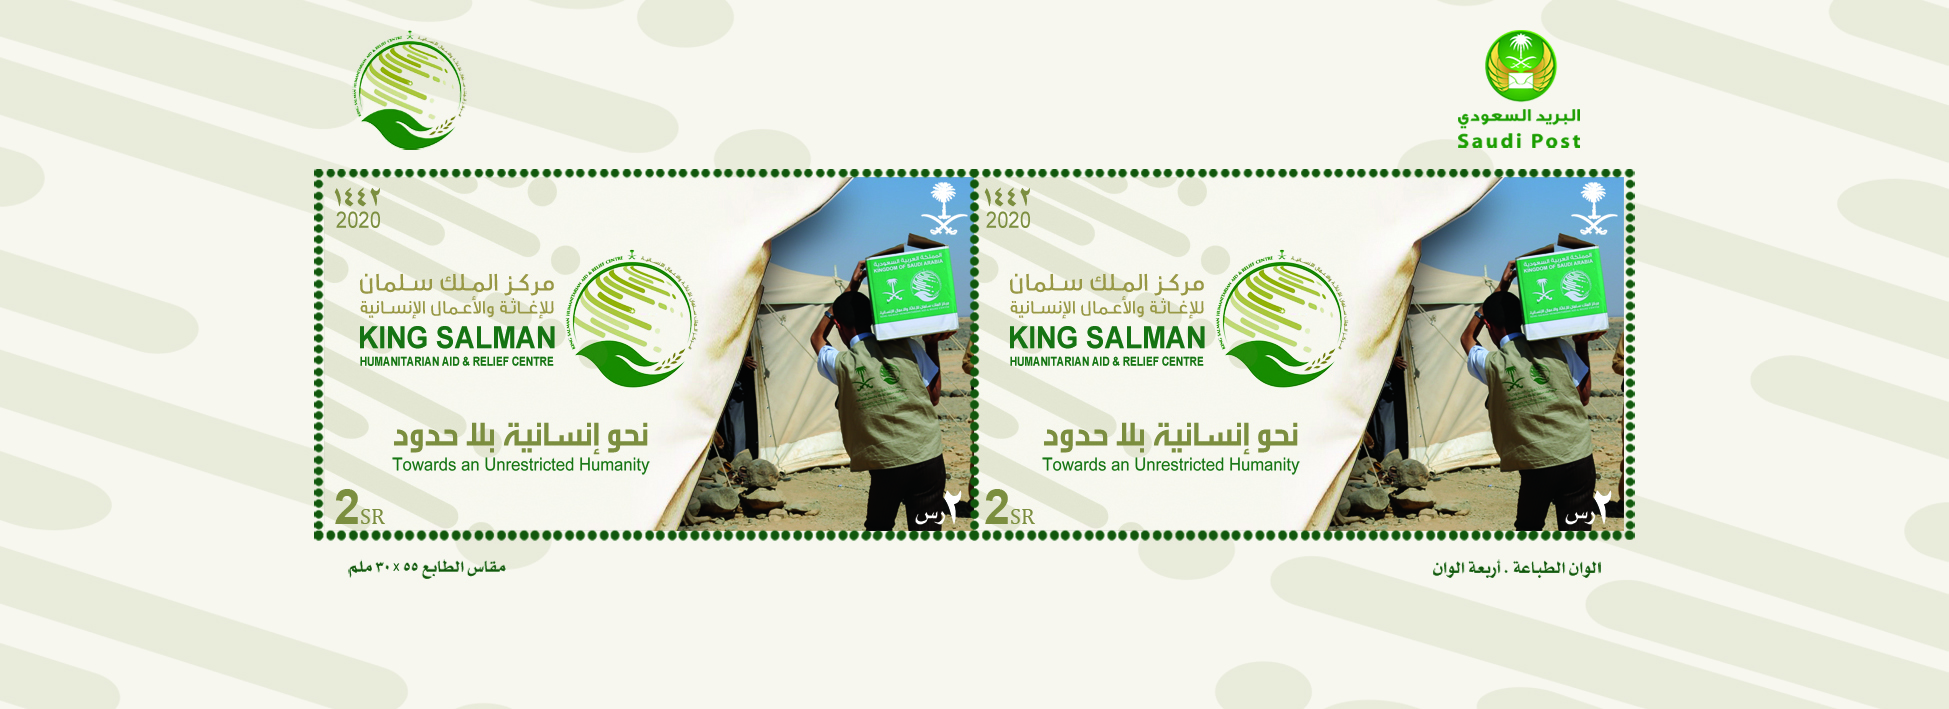 مؤسسة البريد تصدر طابعاً تذكارياً لمركز الملك سلمان للإغاثة الإنسانية